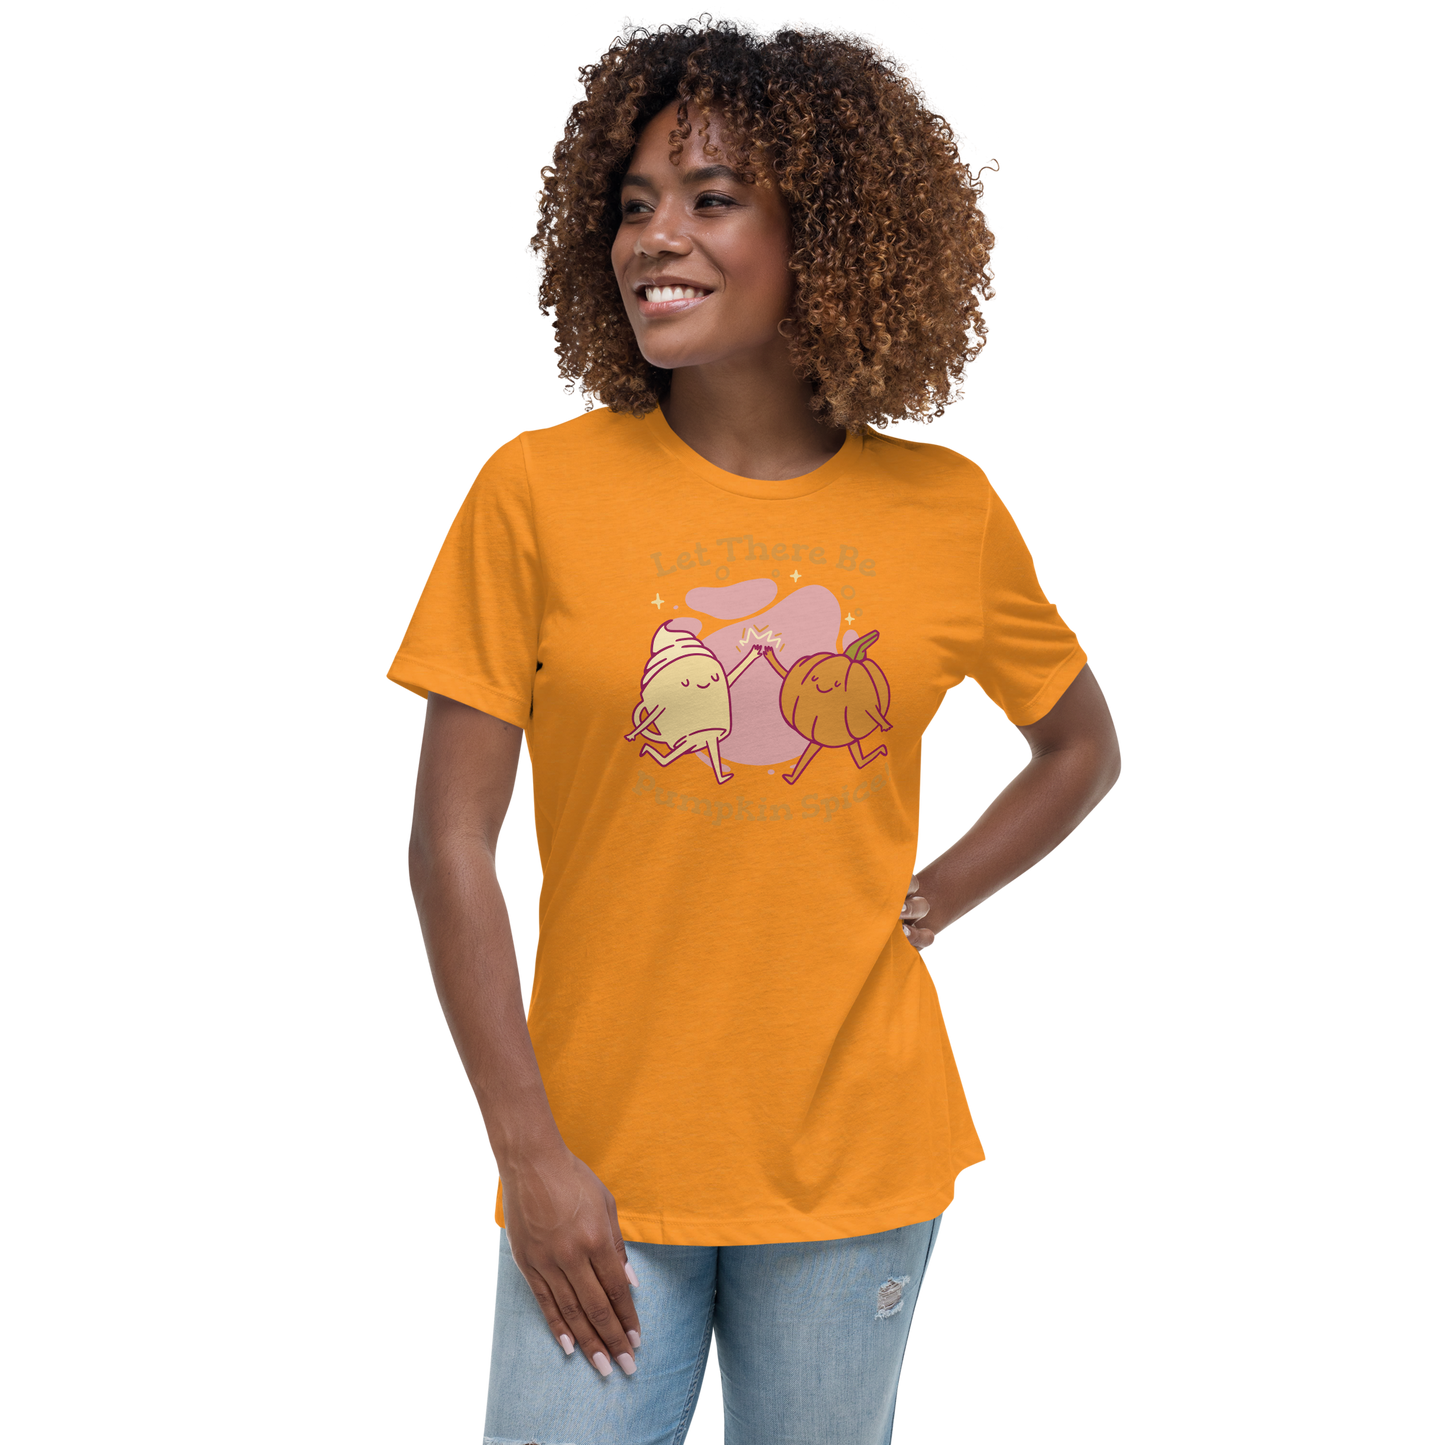 Pumpkin Spice Women's Relaxed T-Shirt